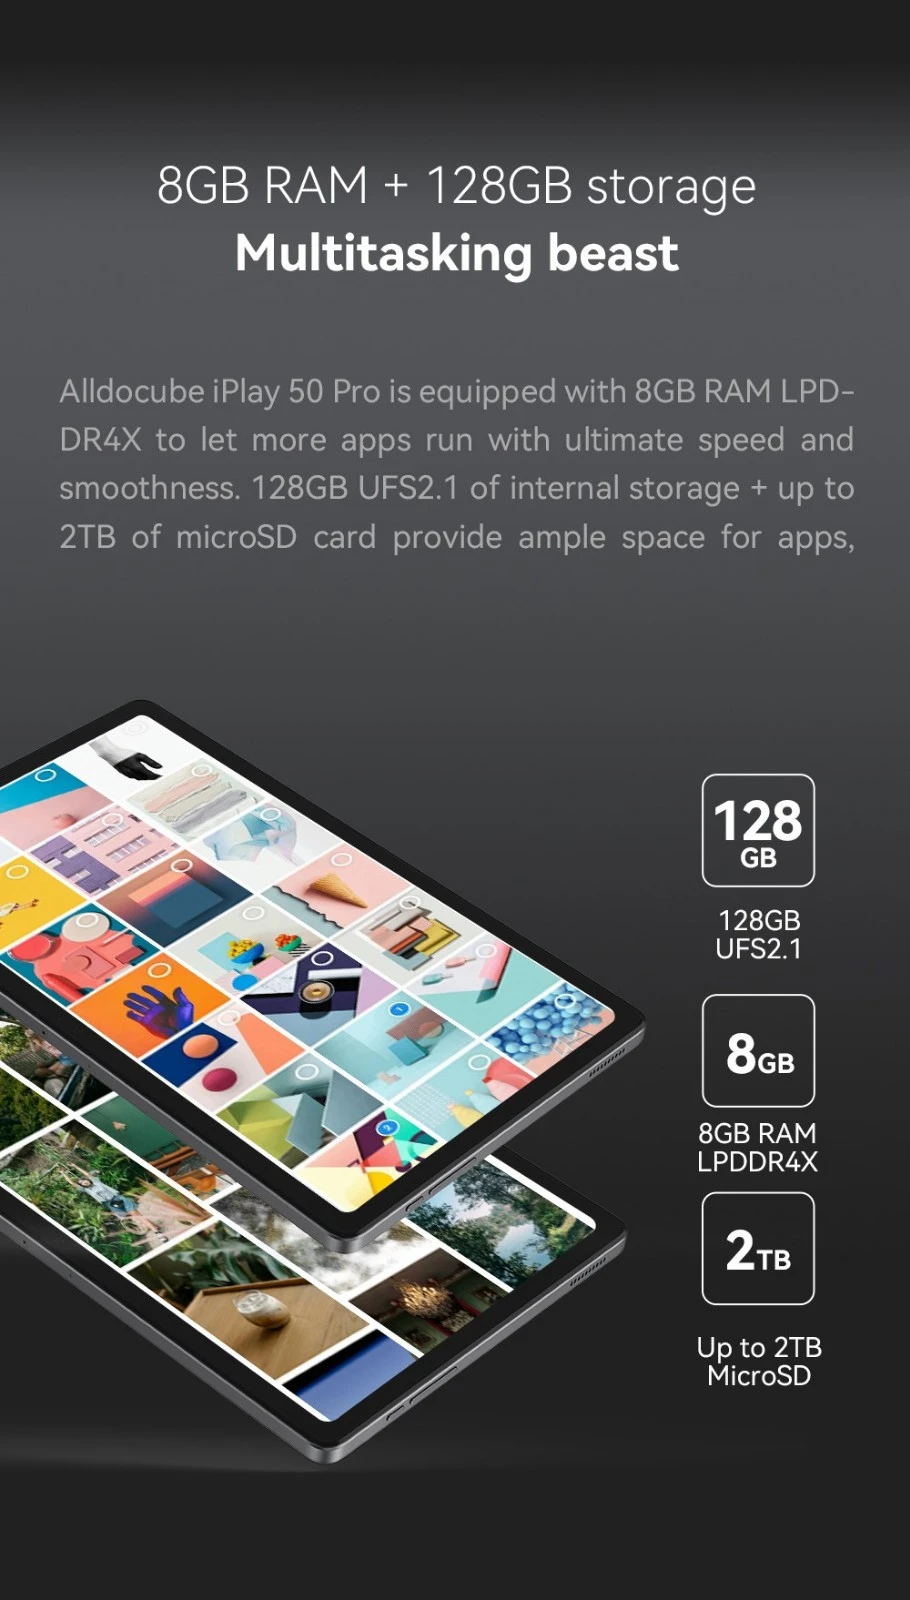 ALLDOCUBE iPlay 50 Pro 10.4